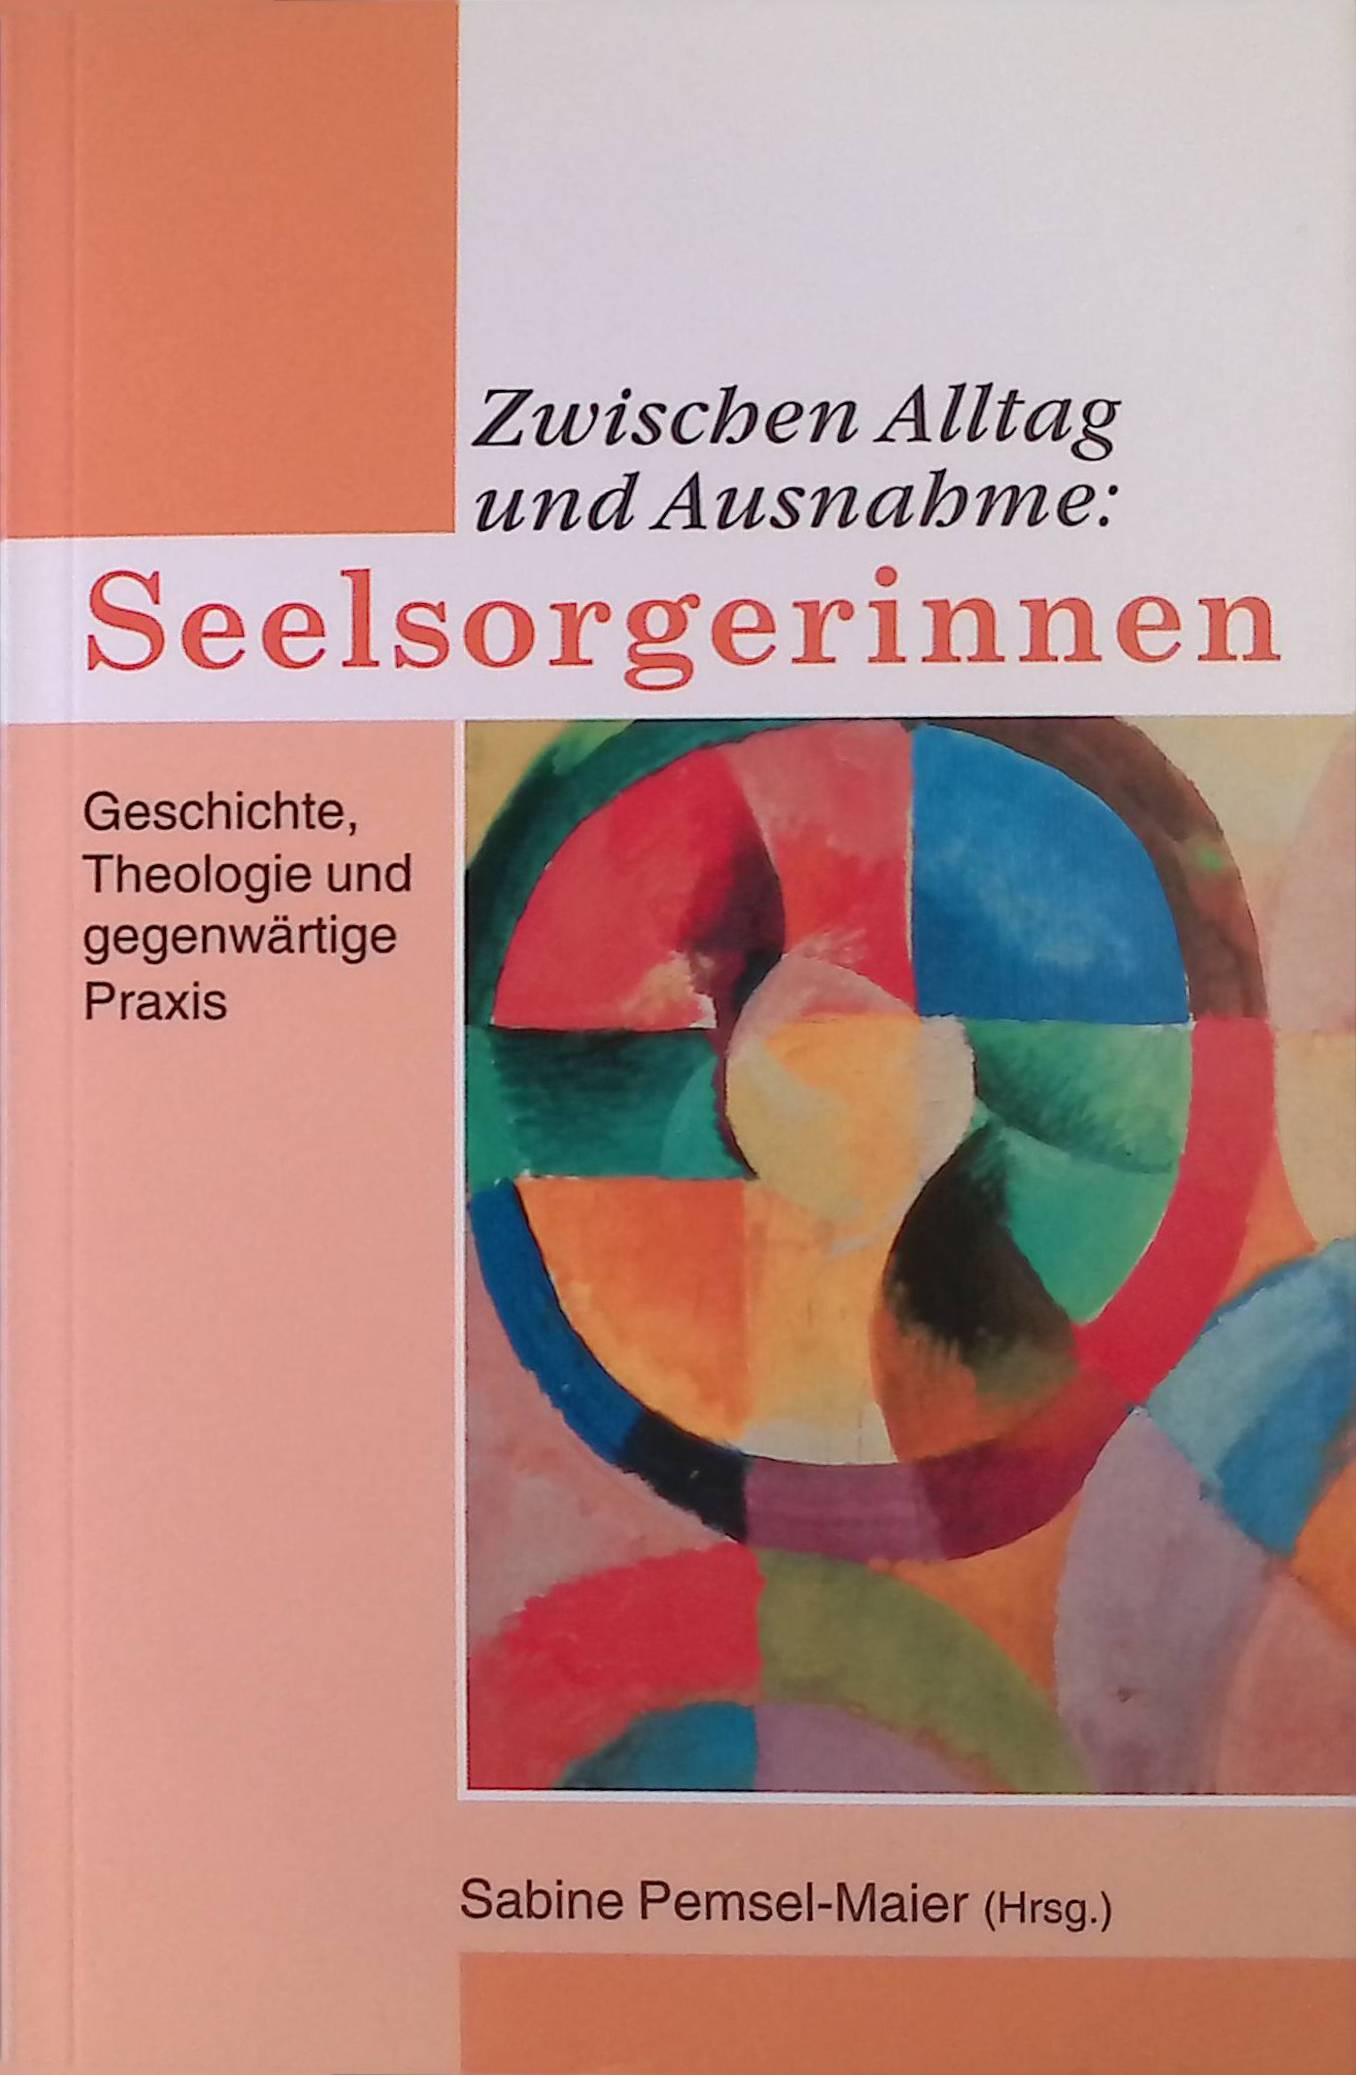 Zwischen Alltag und Ausnahme: Seelsorgerinnen. Geschichte, Theologie und gegenwärtige Praxis. - Pemsel-Maier, Sabine